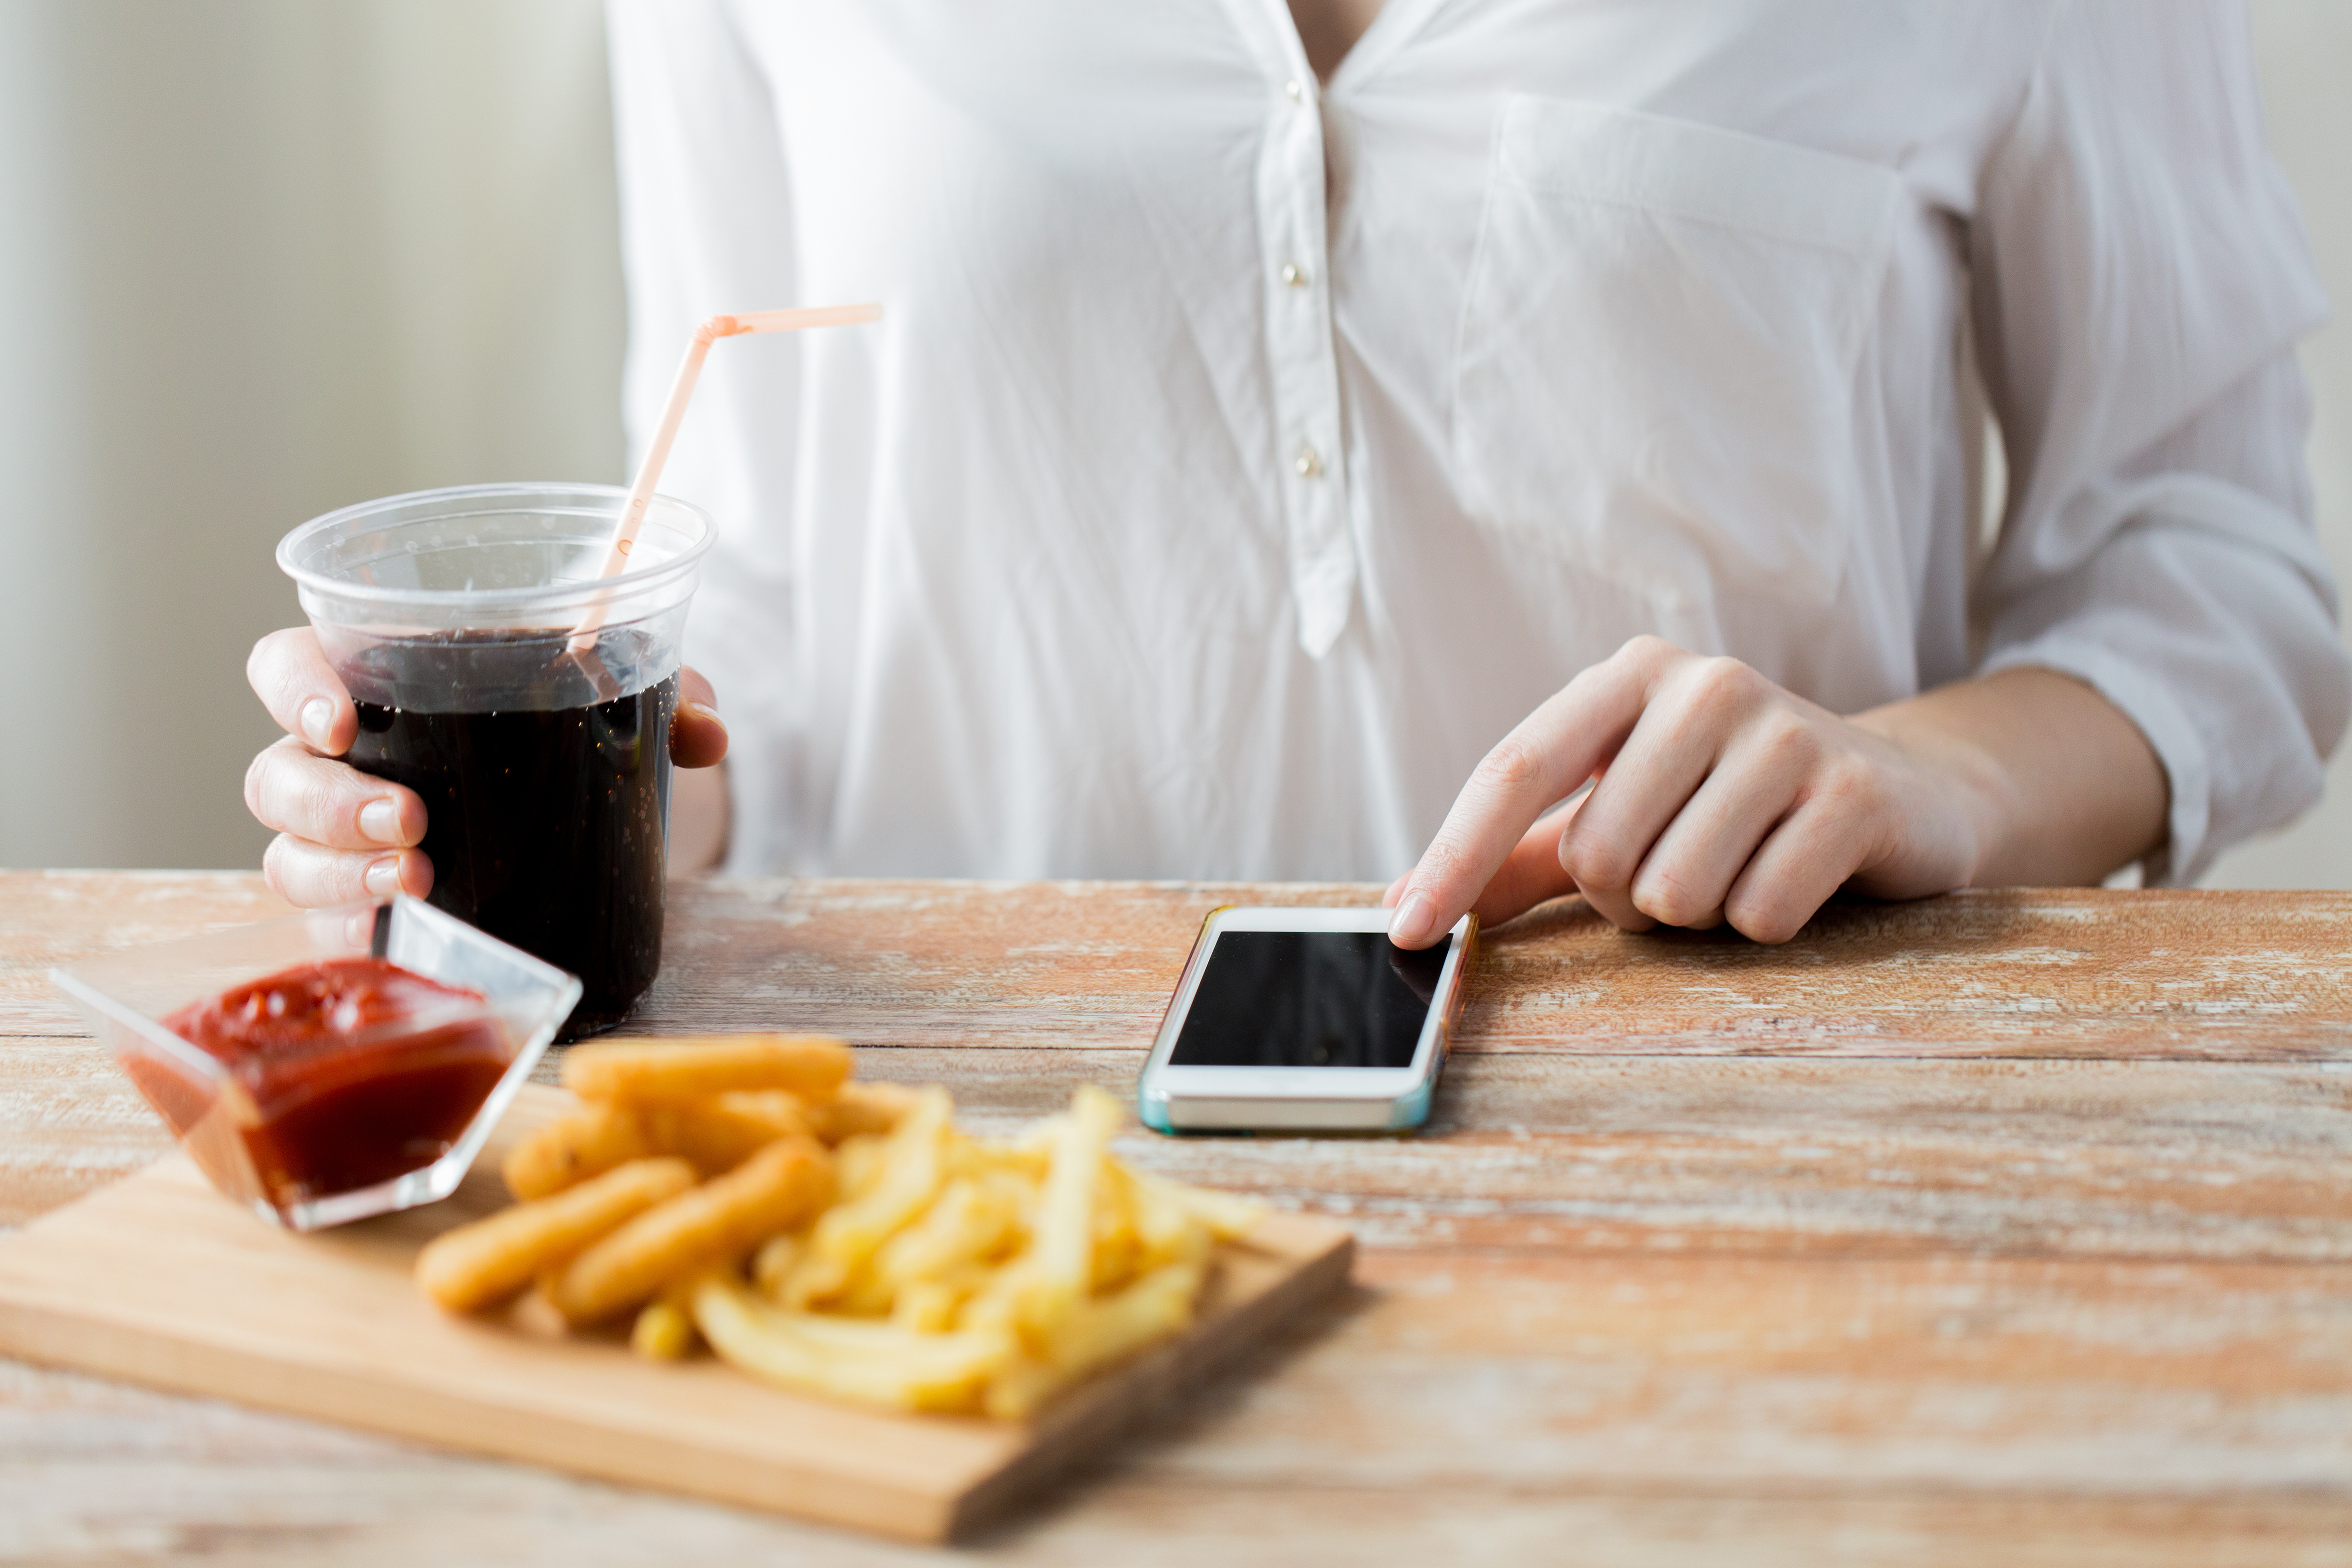 Badanie: młodzi ludzie czują większą potrzebę dostępu do smartfona niż do jedzenia